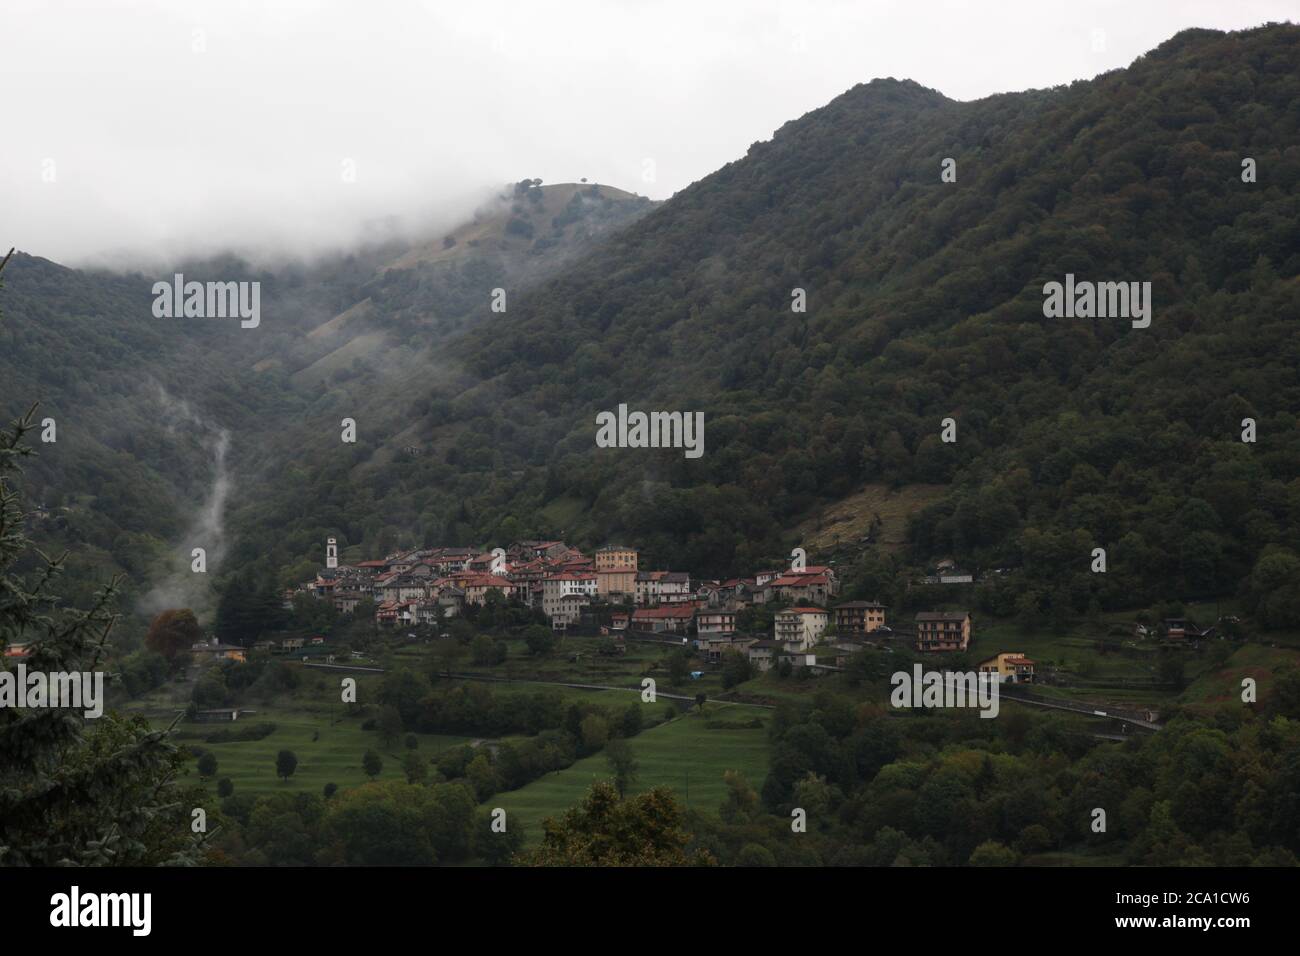 Casima, Kanton Tessin (TI)/ Schweiz - September 29 2013: Vilage Casima im Kanton Tessin, im Tal Muggio an einem nebligen Herbsttag gelegen Stockfoto